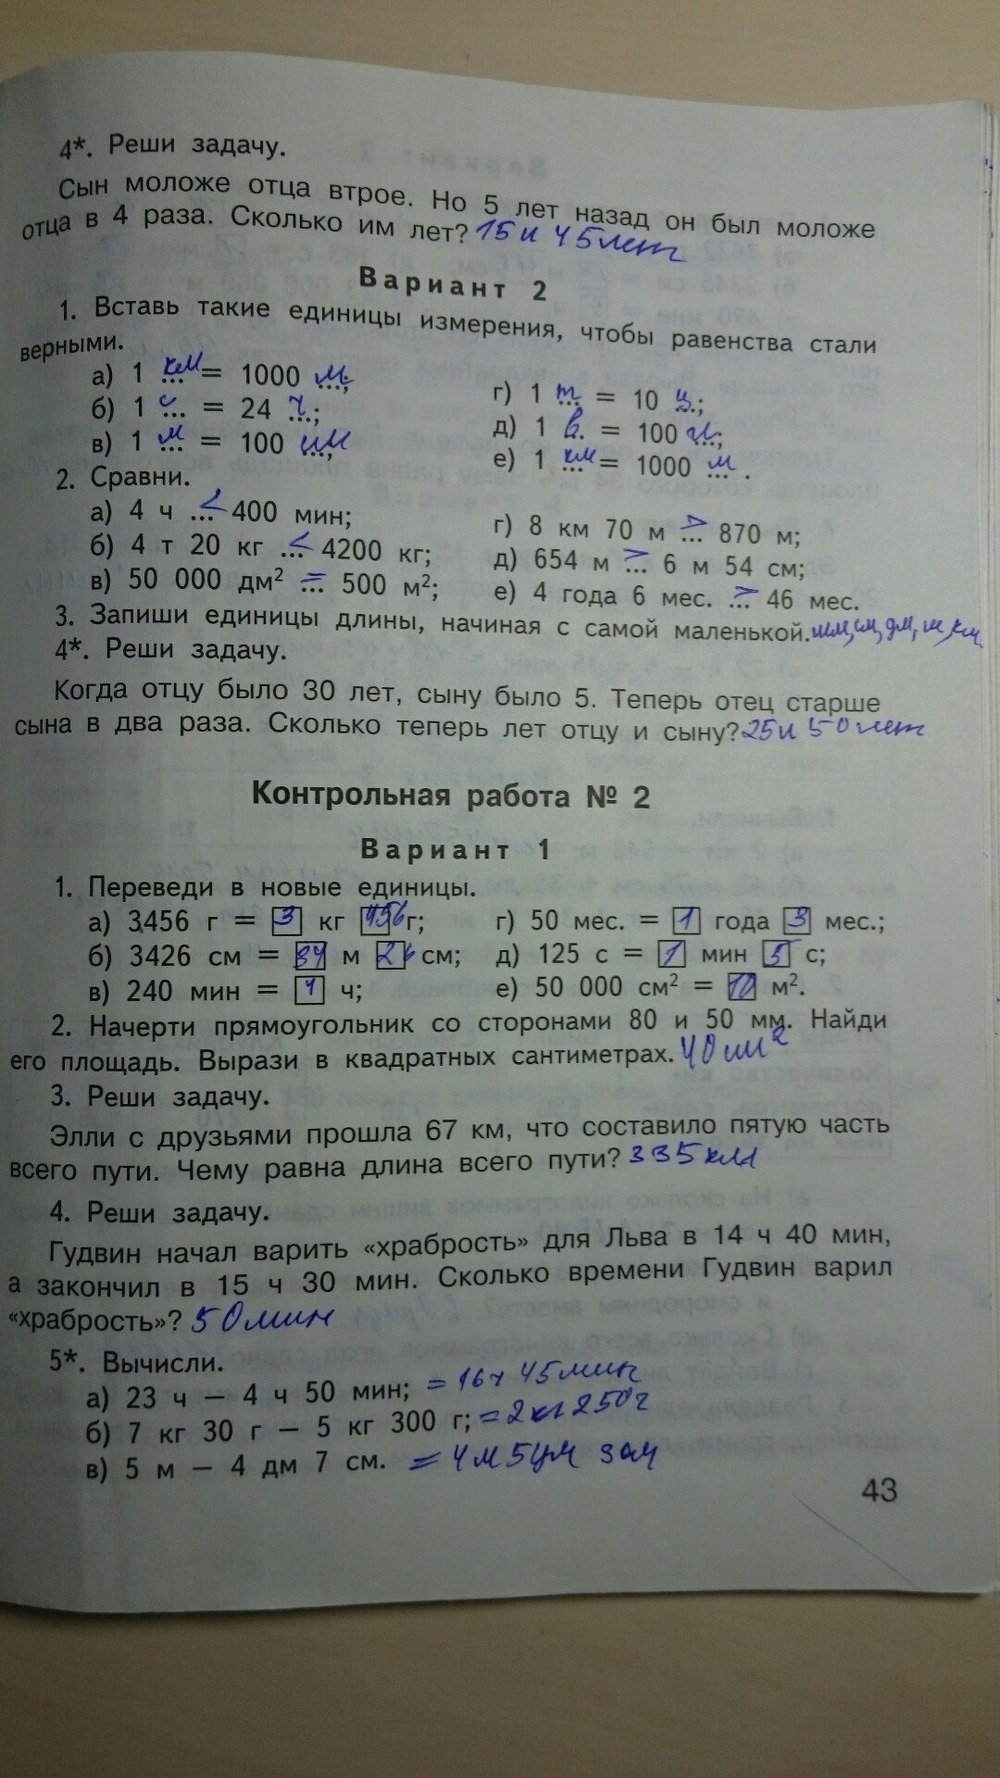 Ситникова ответы контрольные 3 класс. Математике 2 класс Ситникова ответы.